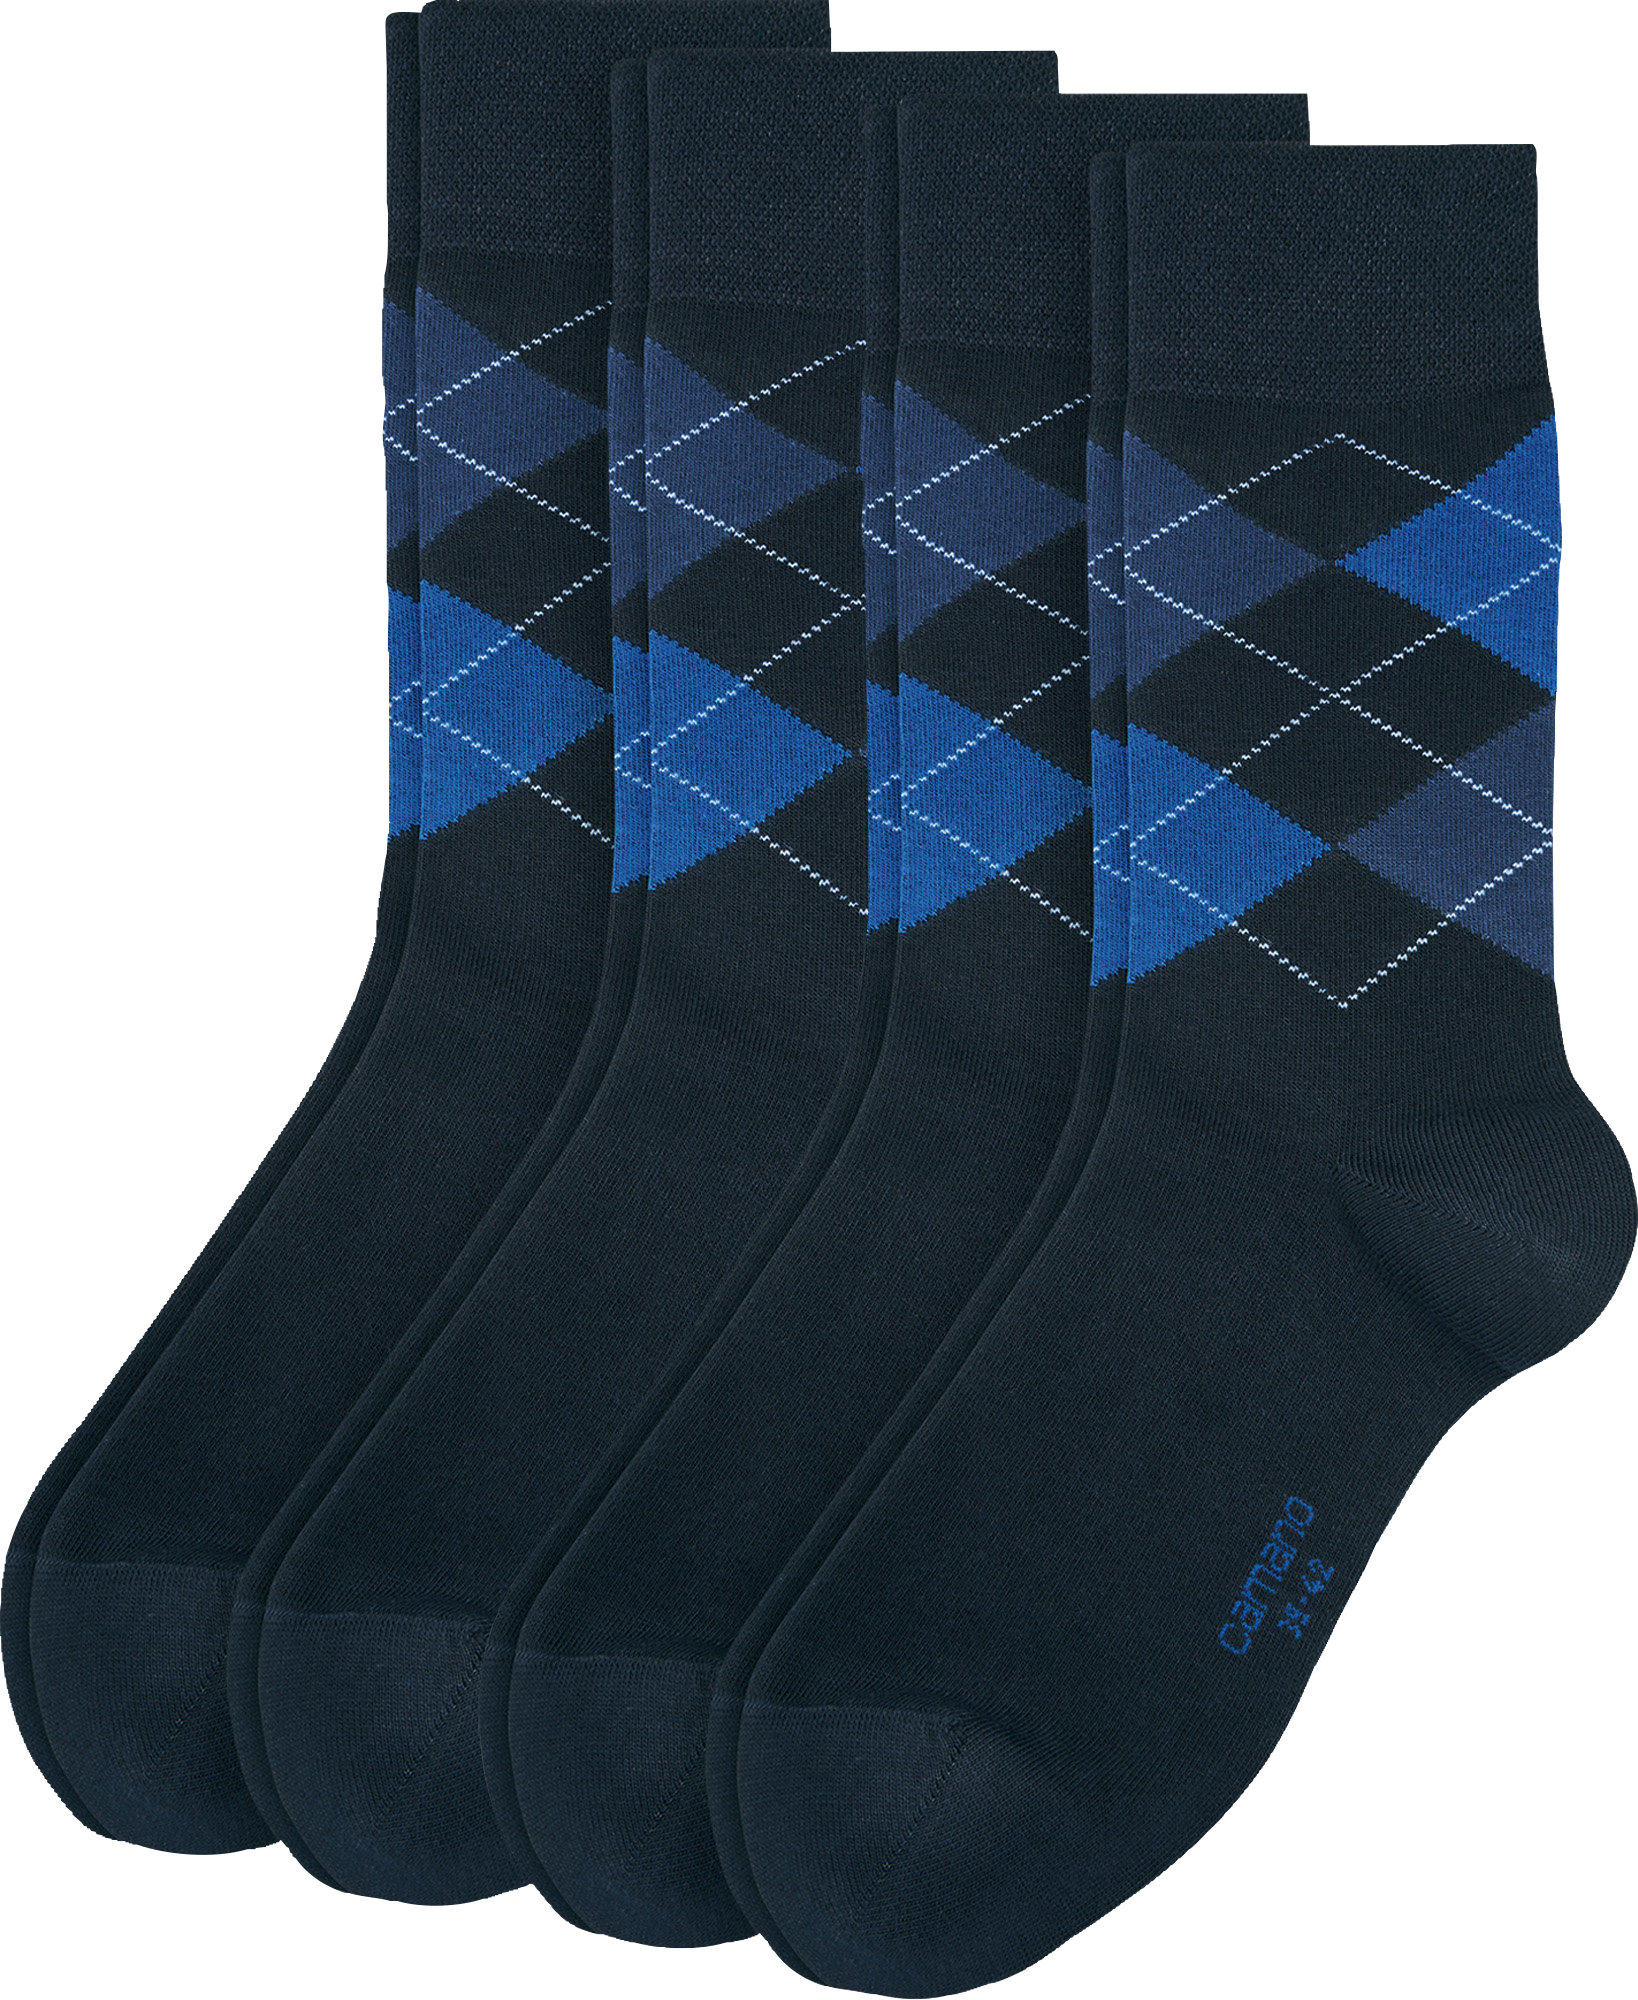 Camano Herren-Socken 4 Paar | eBay